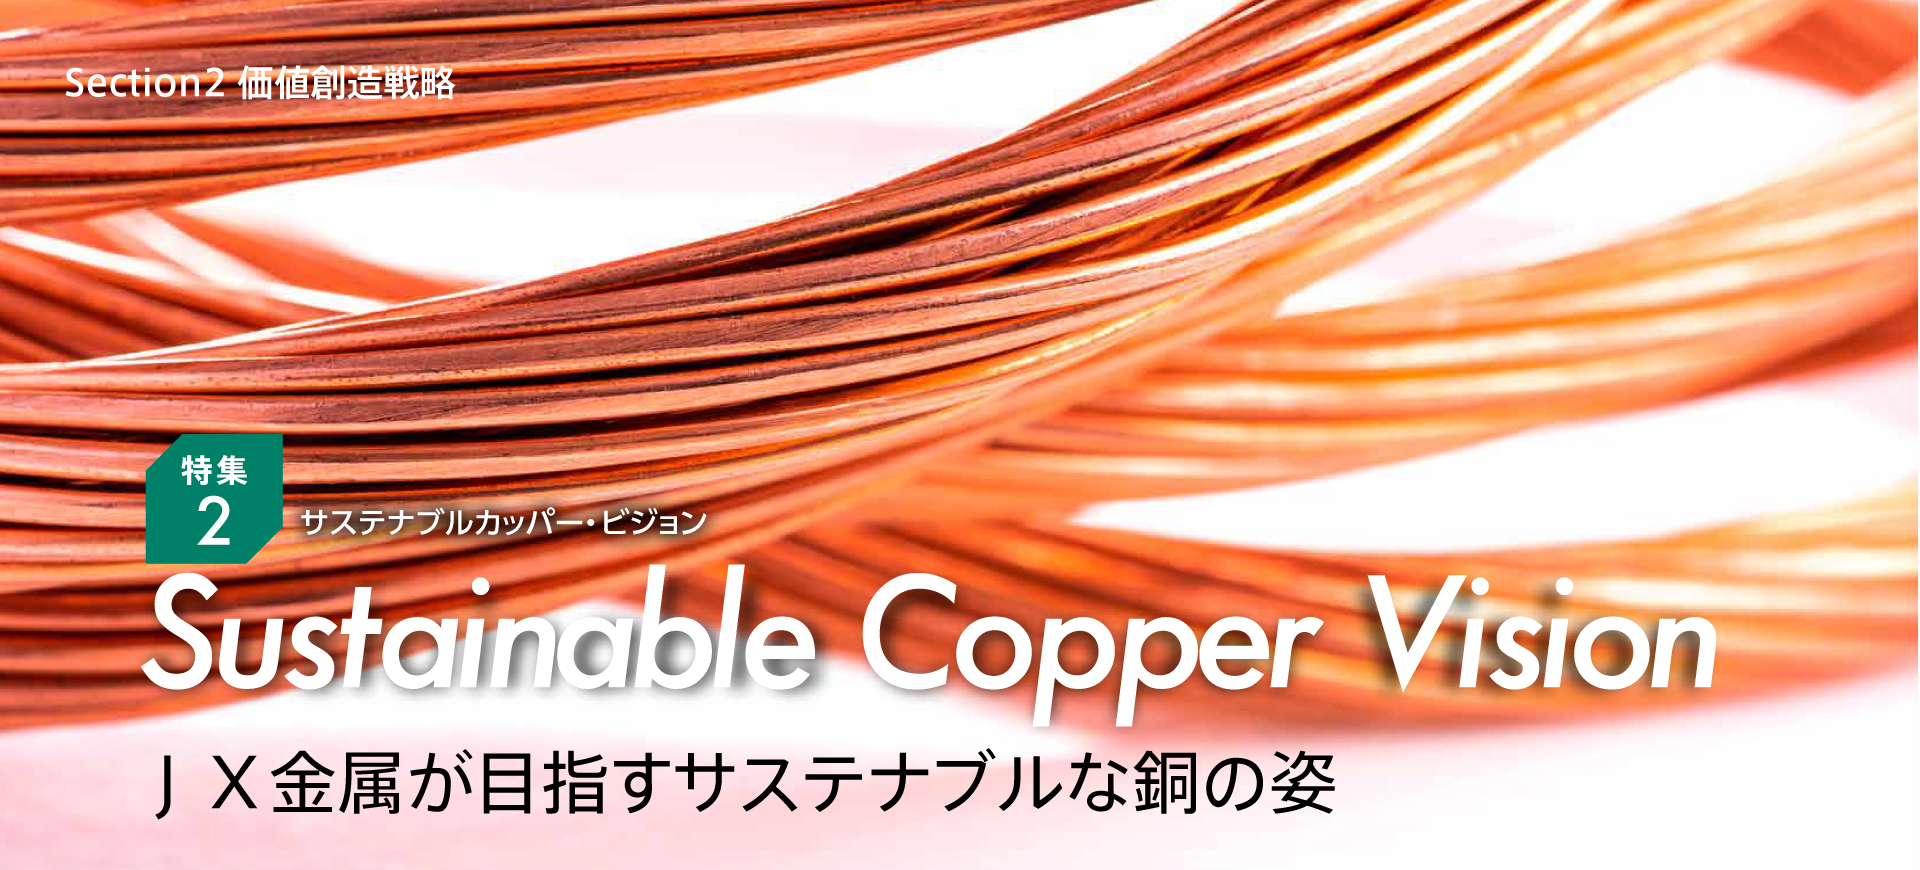 特集2 Sustainable Copper Vision ＪＸ金属が目指すサステナブルな銅の姿